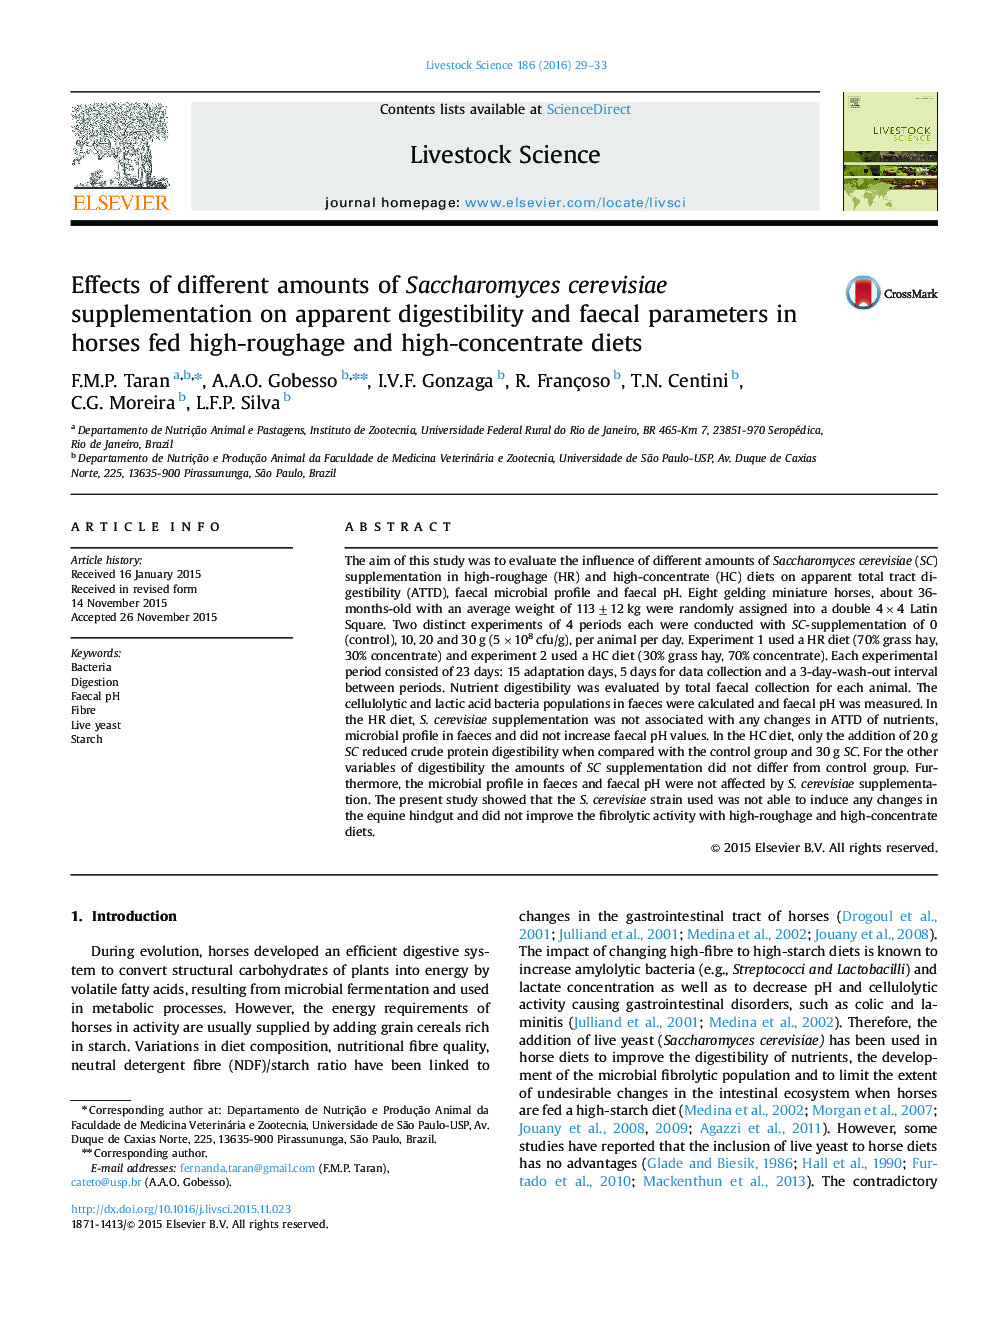 اثرات مقادیر مختلف مکمل Saccharomyces cerevisiae بر پارامترهای قابلیت هضم ظاهری و پارامترهای مدفوع در اسب های دارای رژیم غذایی با علوفه و کنسانتره بالا  